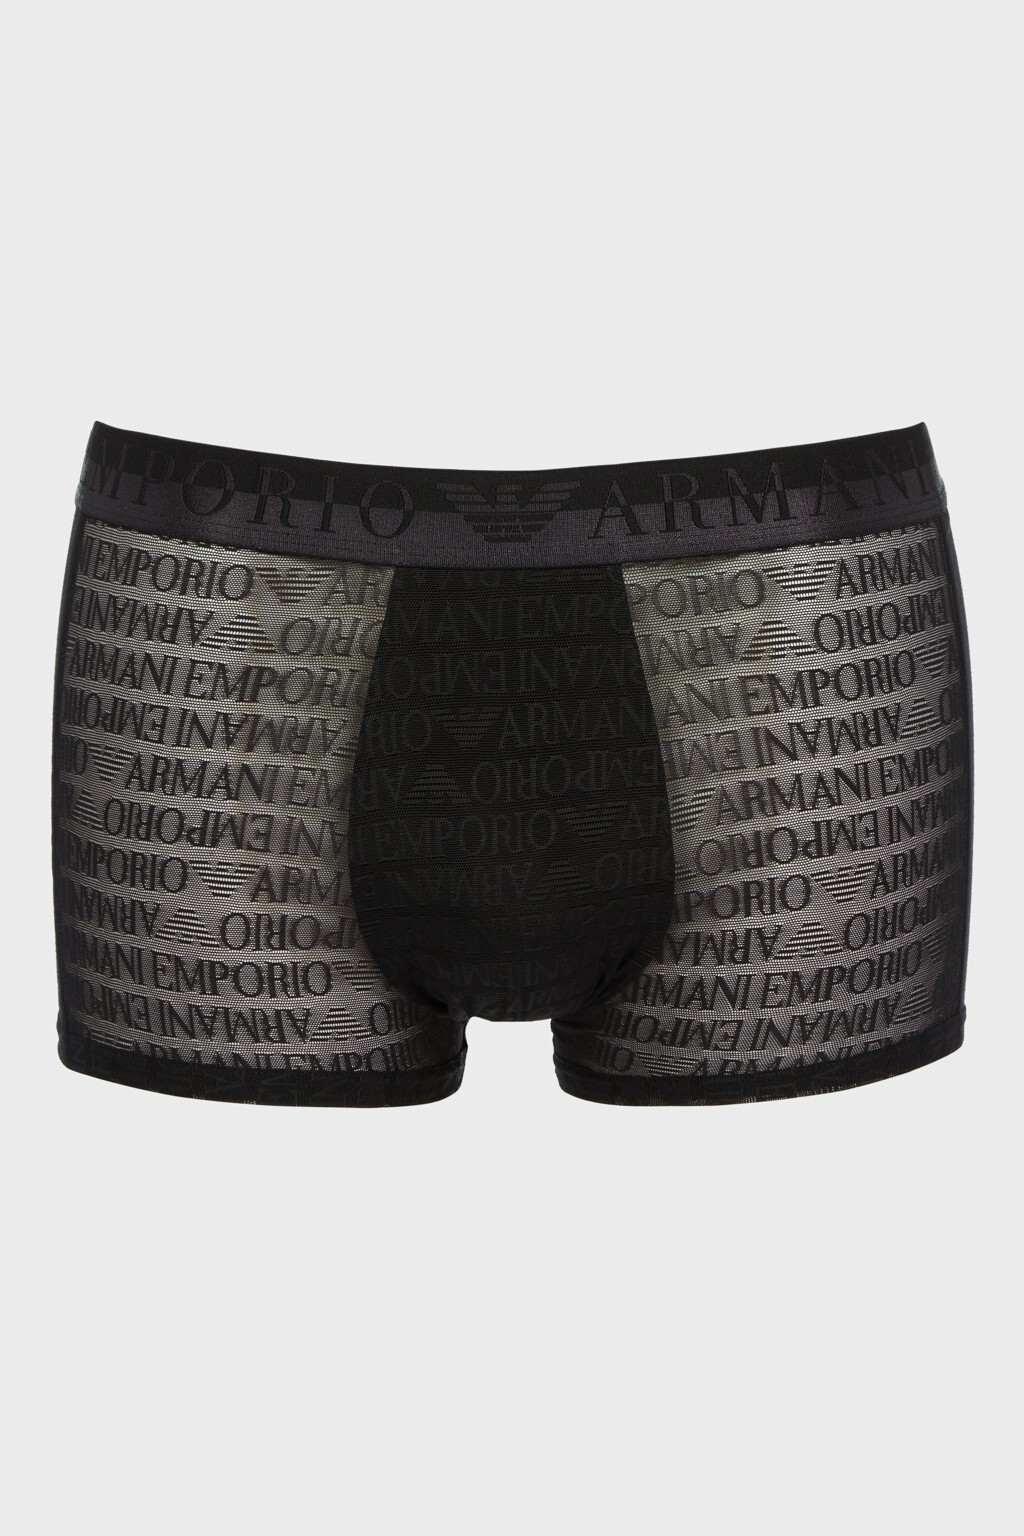 Pánské boxerky 112051 3F527 00020 černé - Emporio Armani M